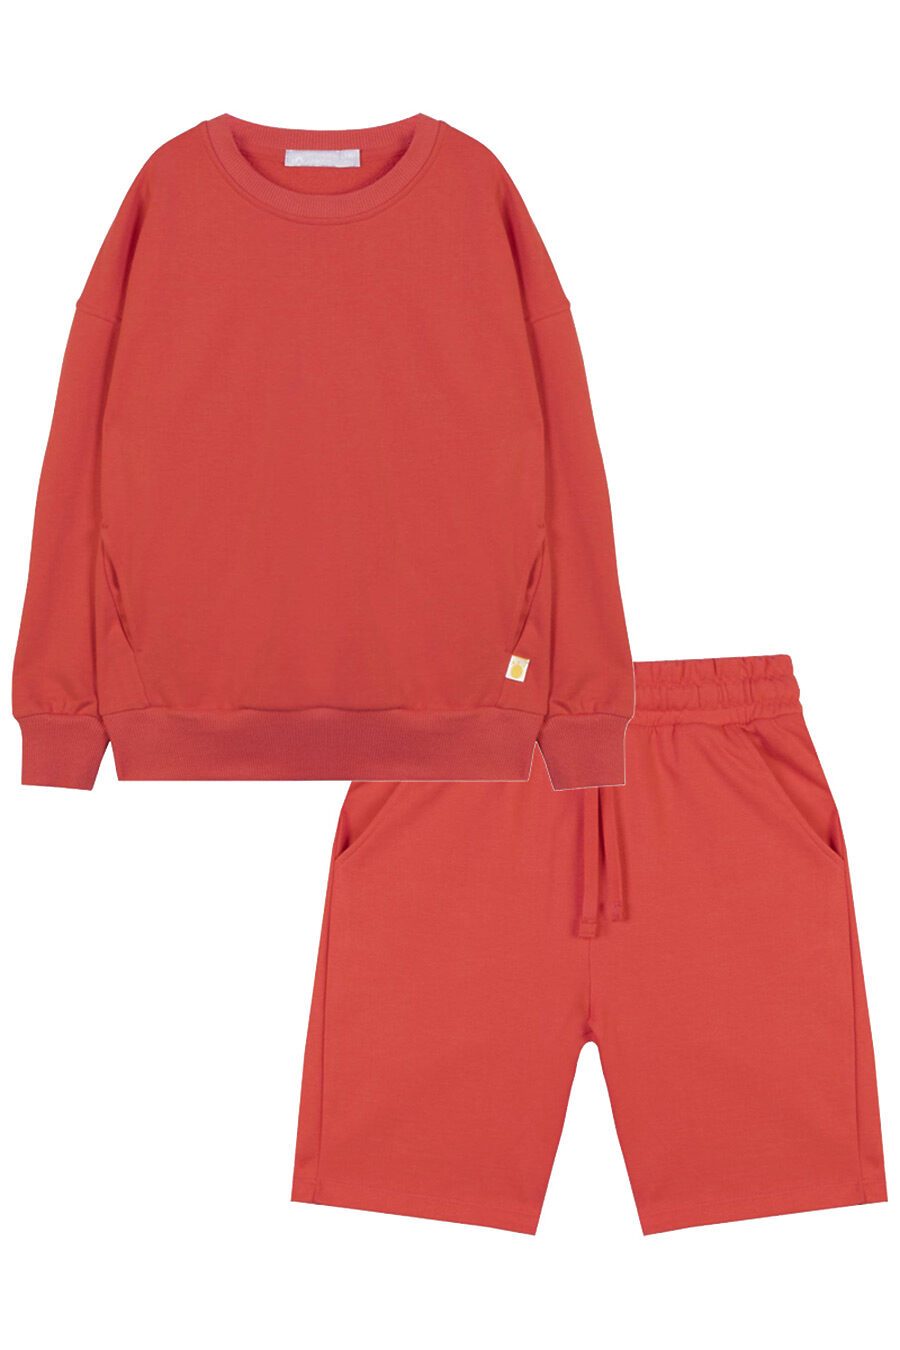 Костюм (Шорты+Свитшот) для девочек KOGANKIDS 682759 купить оптом от производителя. Совместная покупка детской одежды в OptMoyo